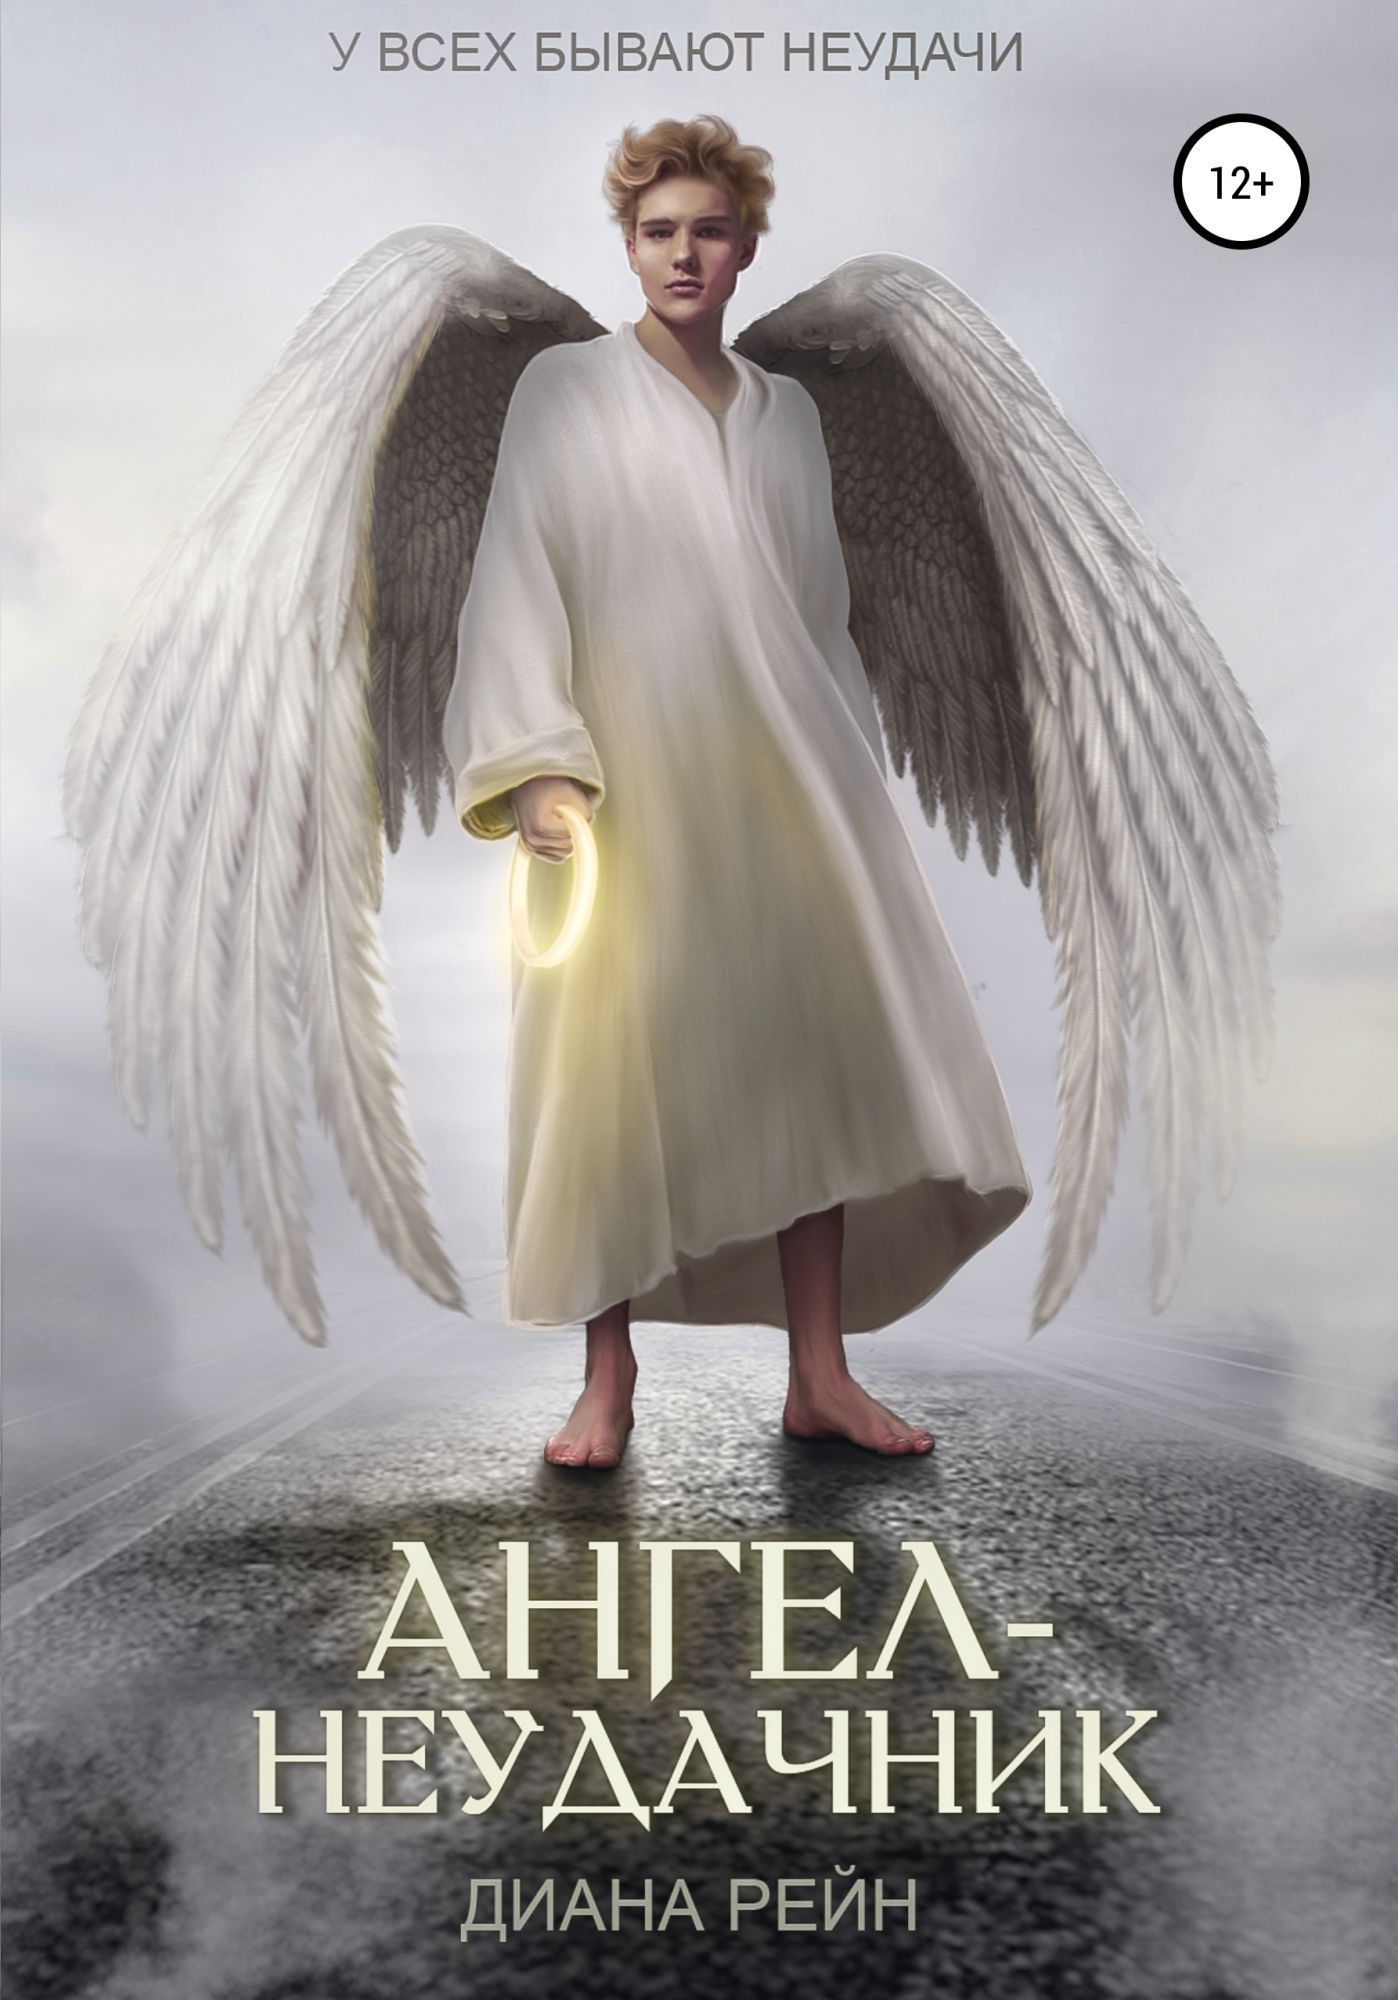 Рассказы про ангелов. Книга ангелов. Ангел с книгой. Ангел неудачник обложка книги. Книга про ангела.